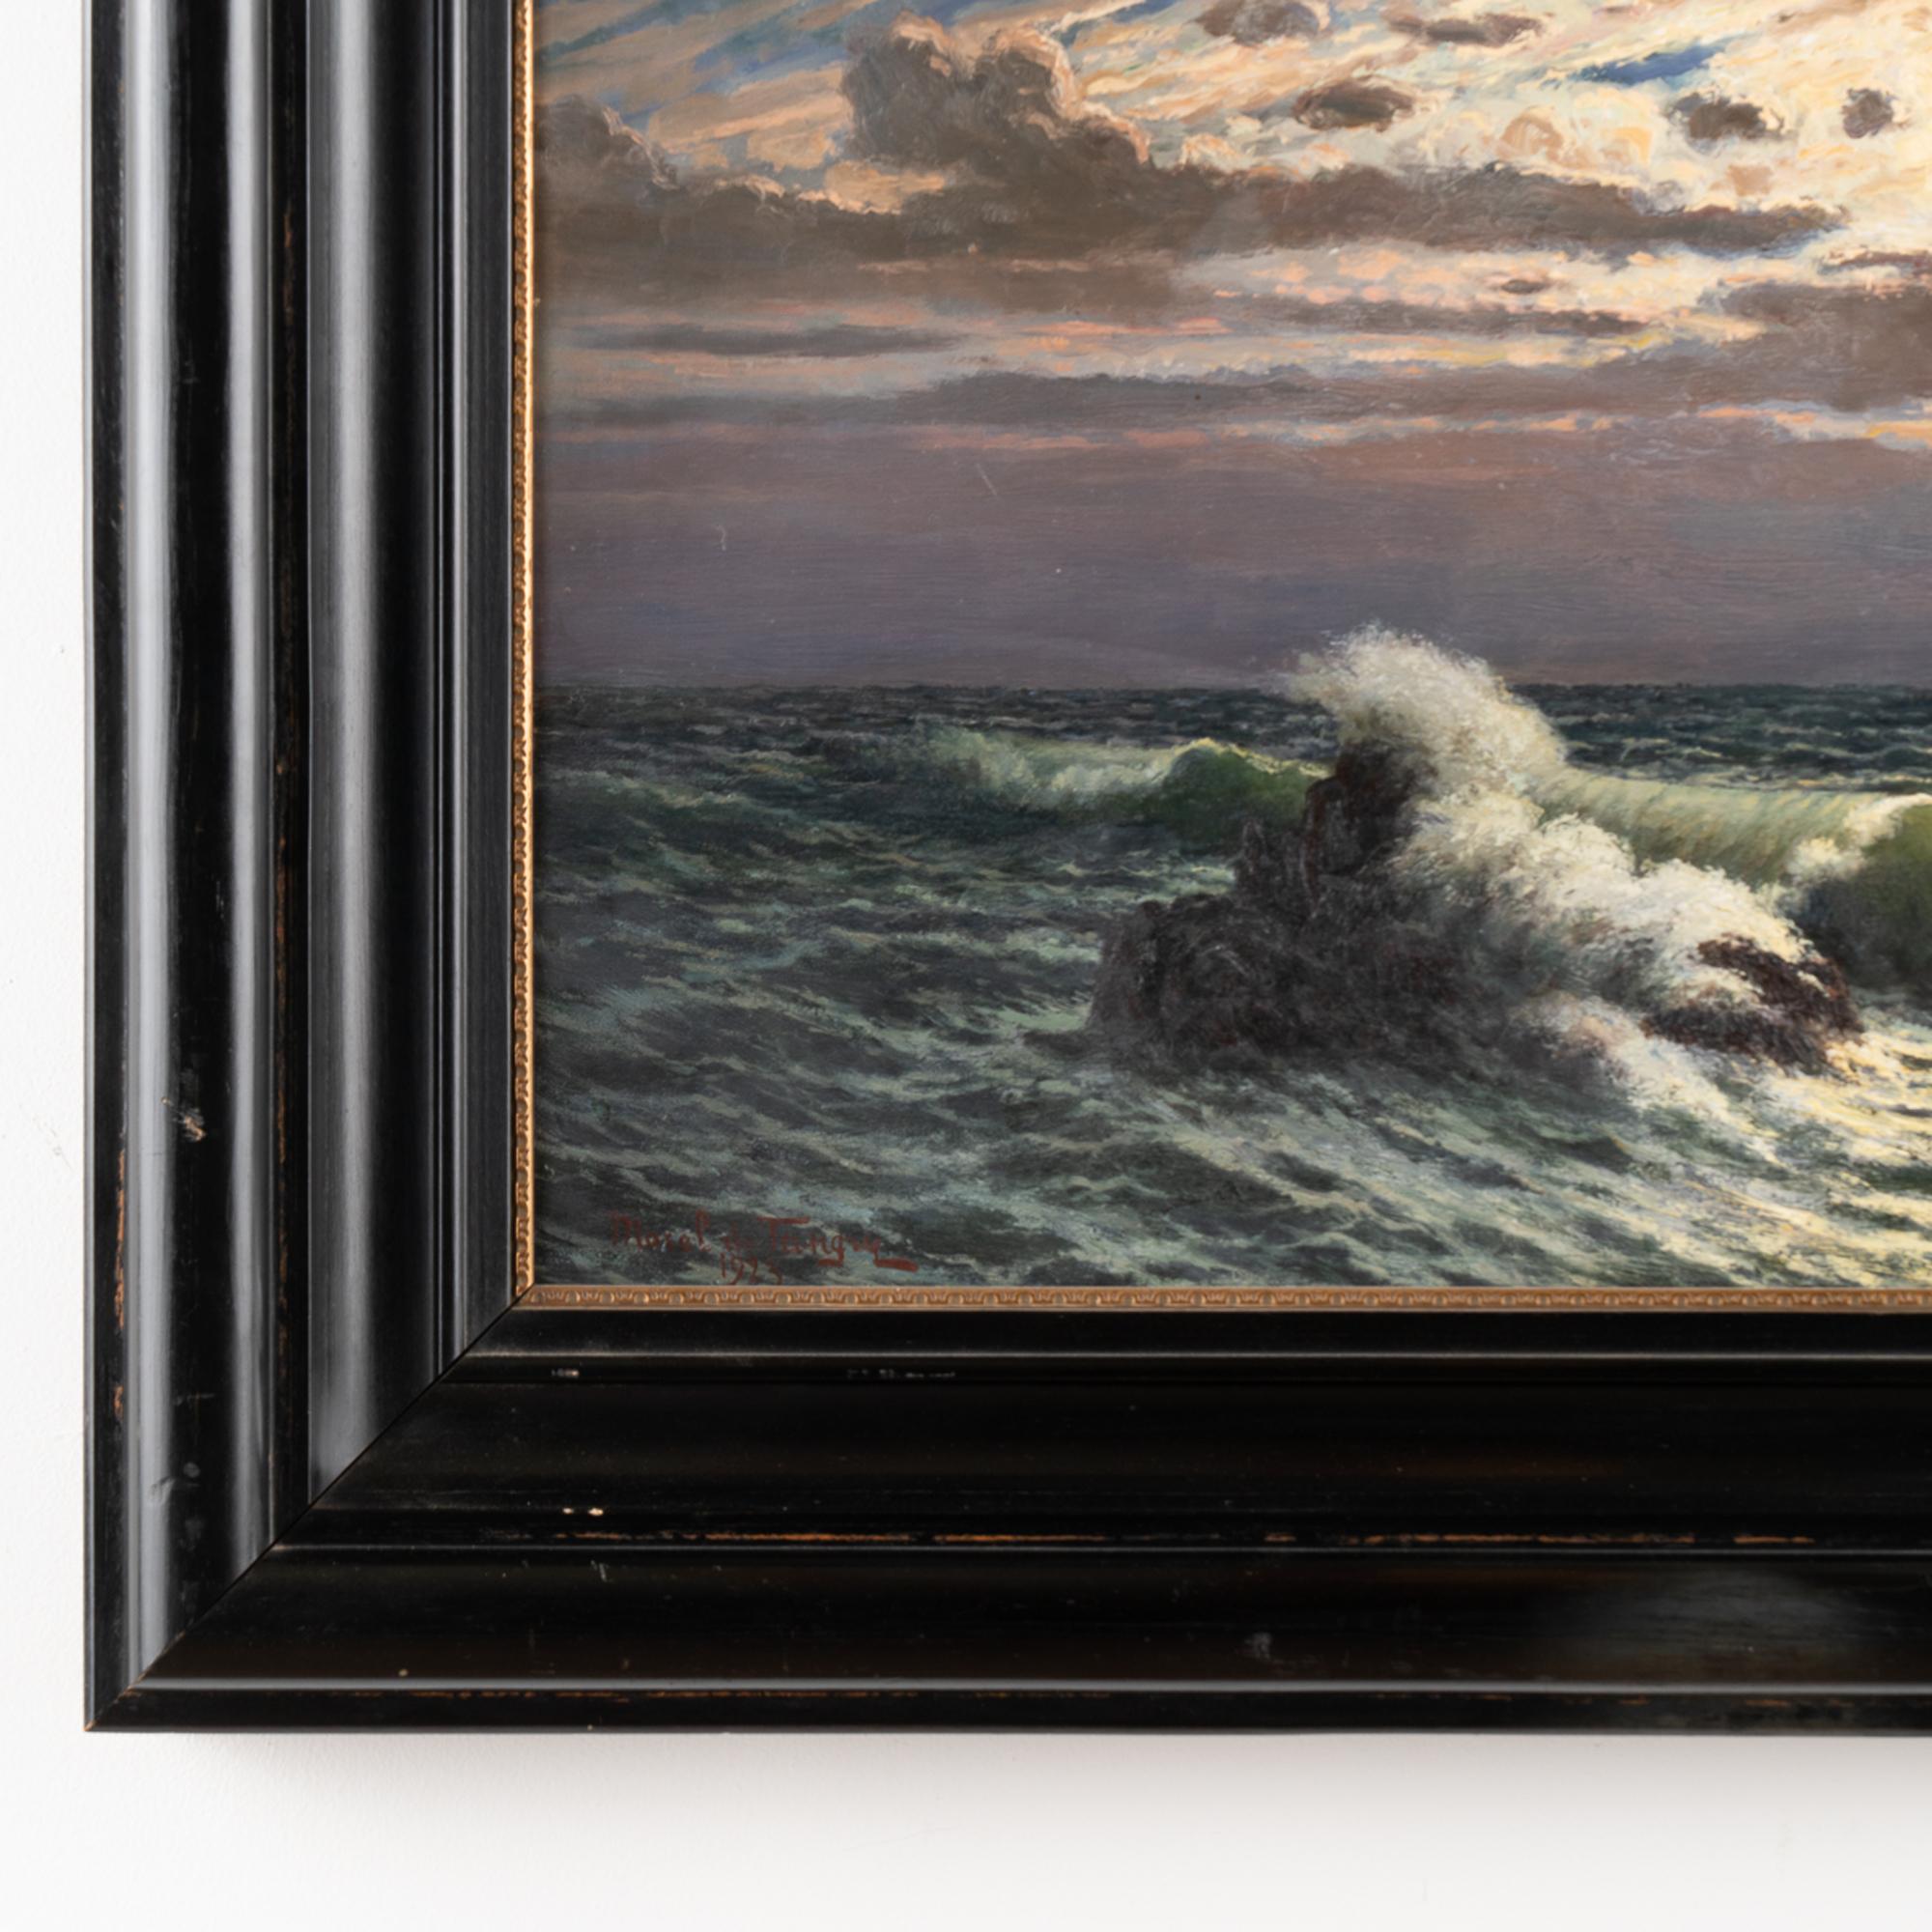 Öl auf Leinwand Gemälde von mondbeschienenen Ozeanwellen, signiert, datiert Morel de Tanguy 1923 (20. Jahrhundert)